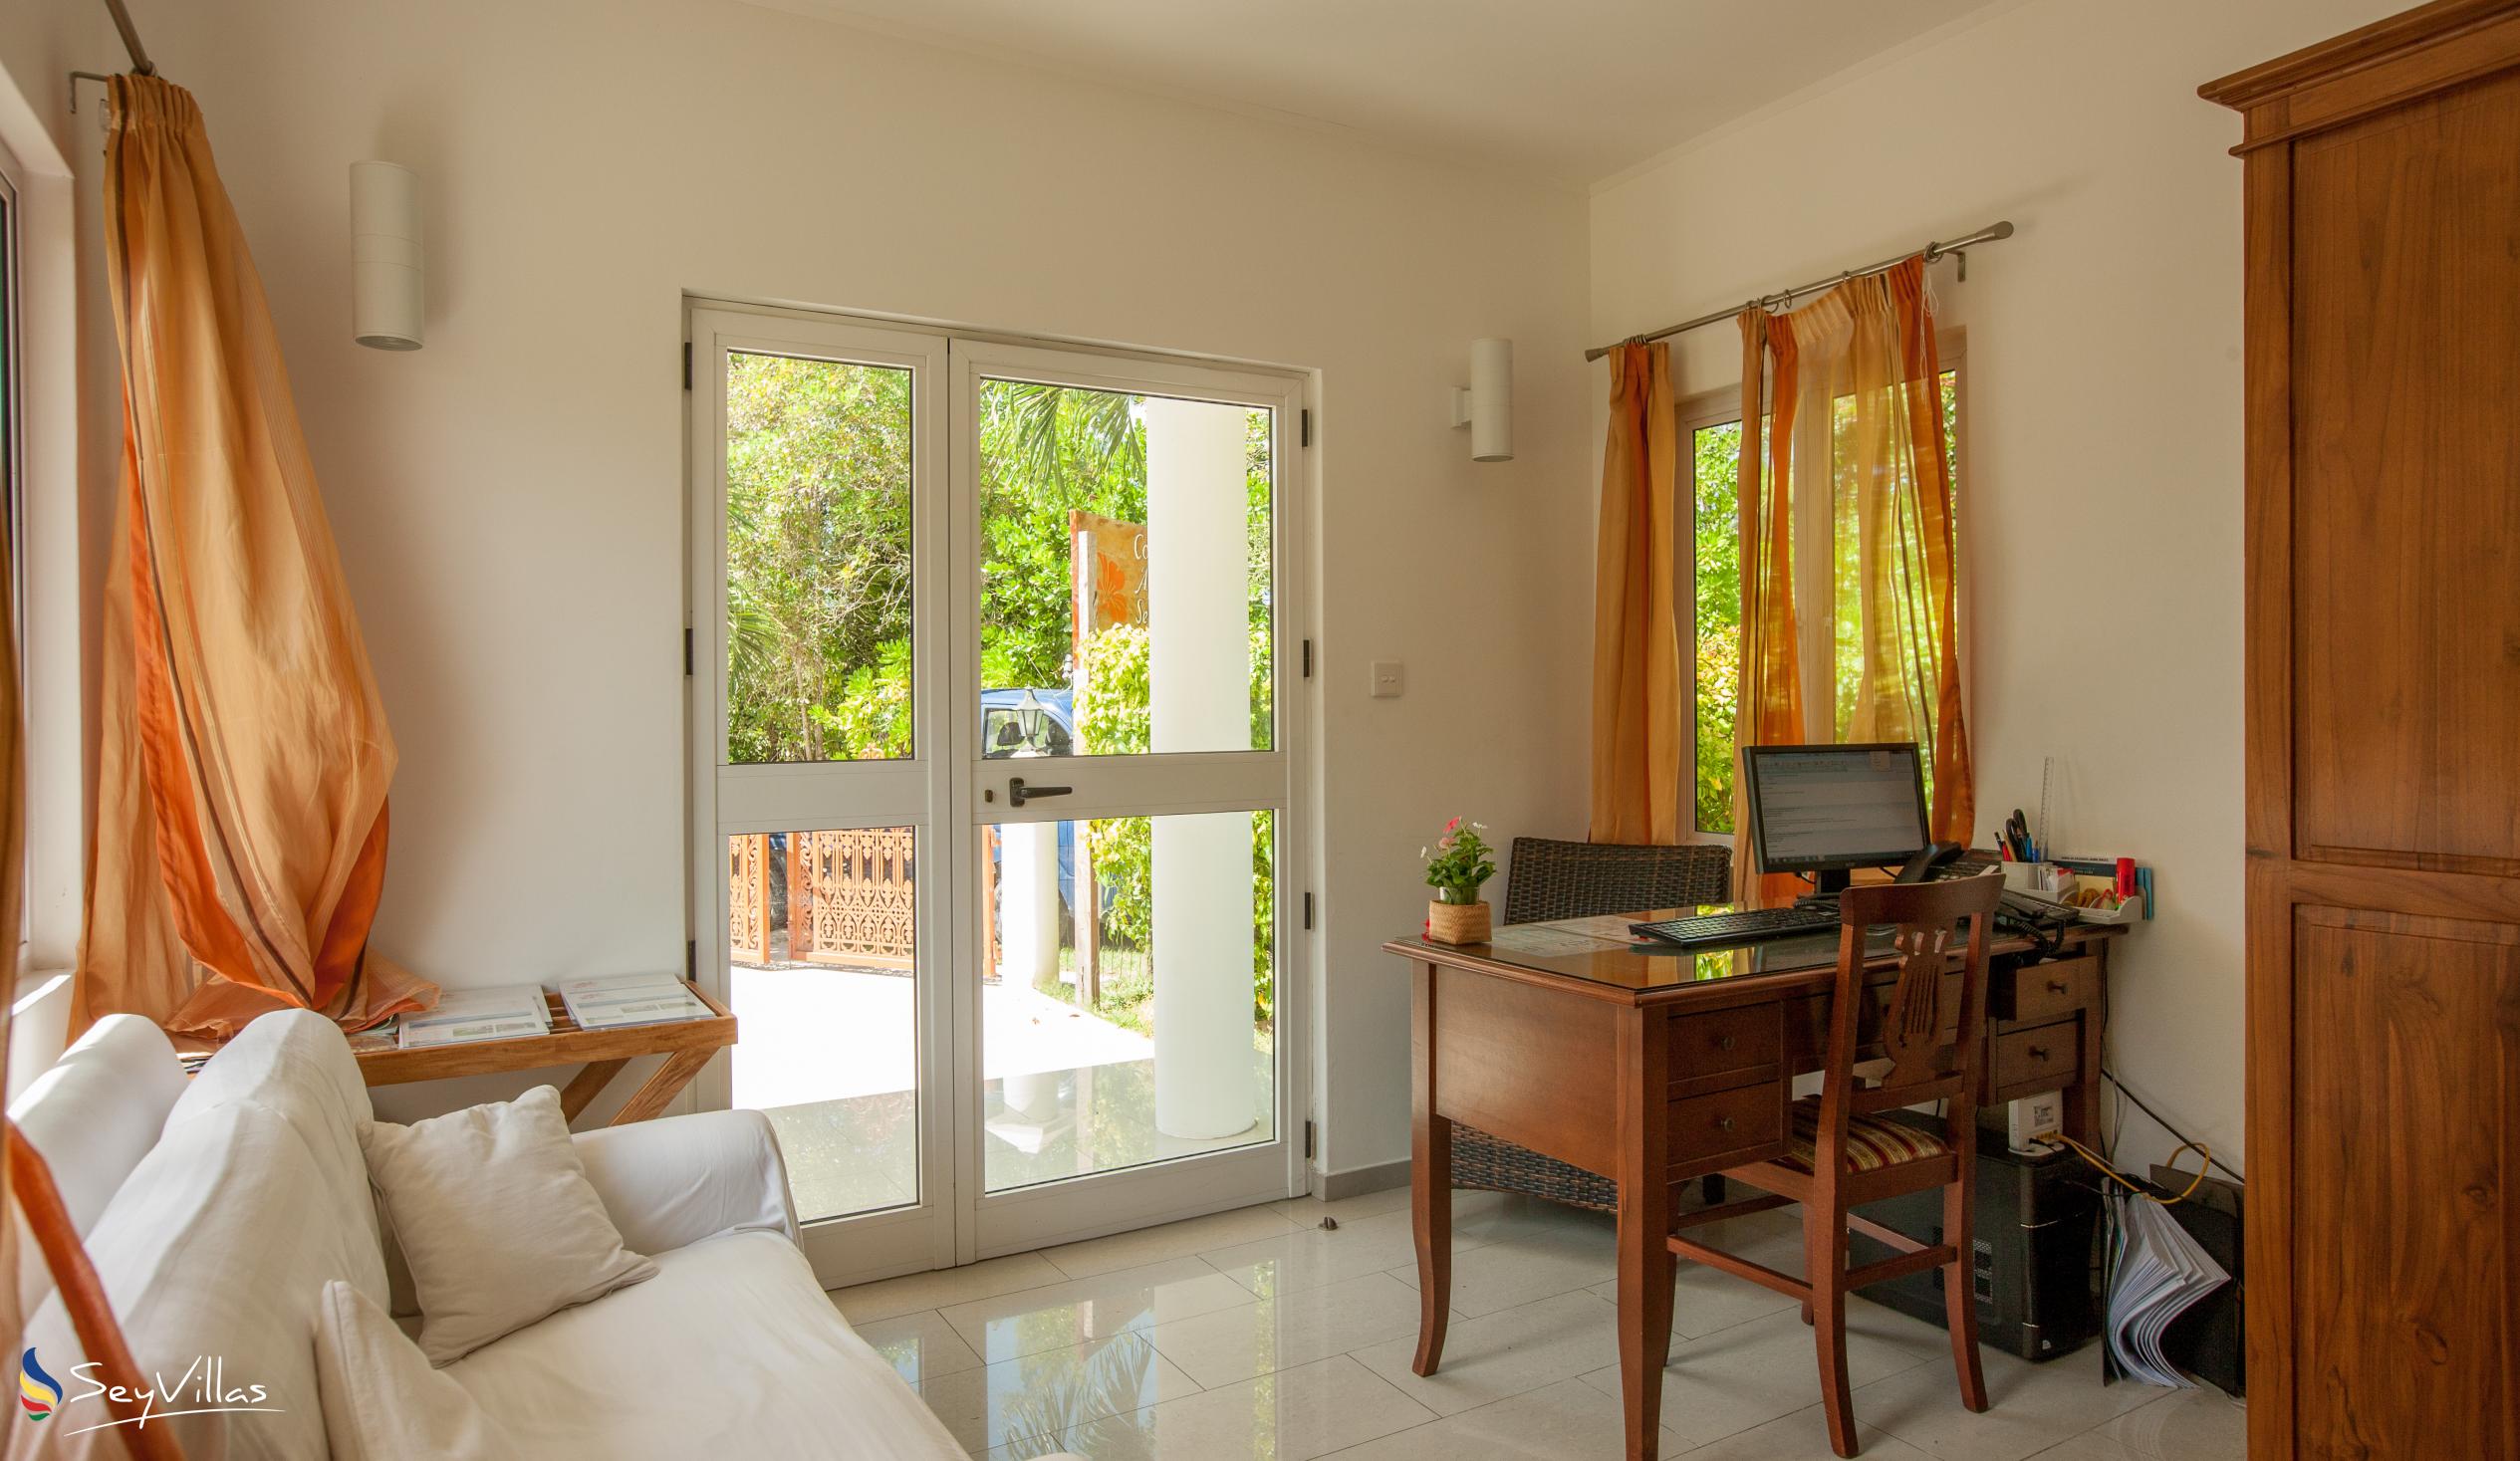 Foto 7: Cote d'Or Apartments - Innenbereich - Praslin (Seychellen)